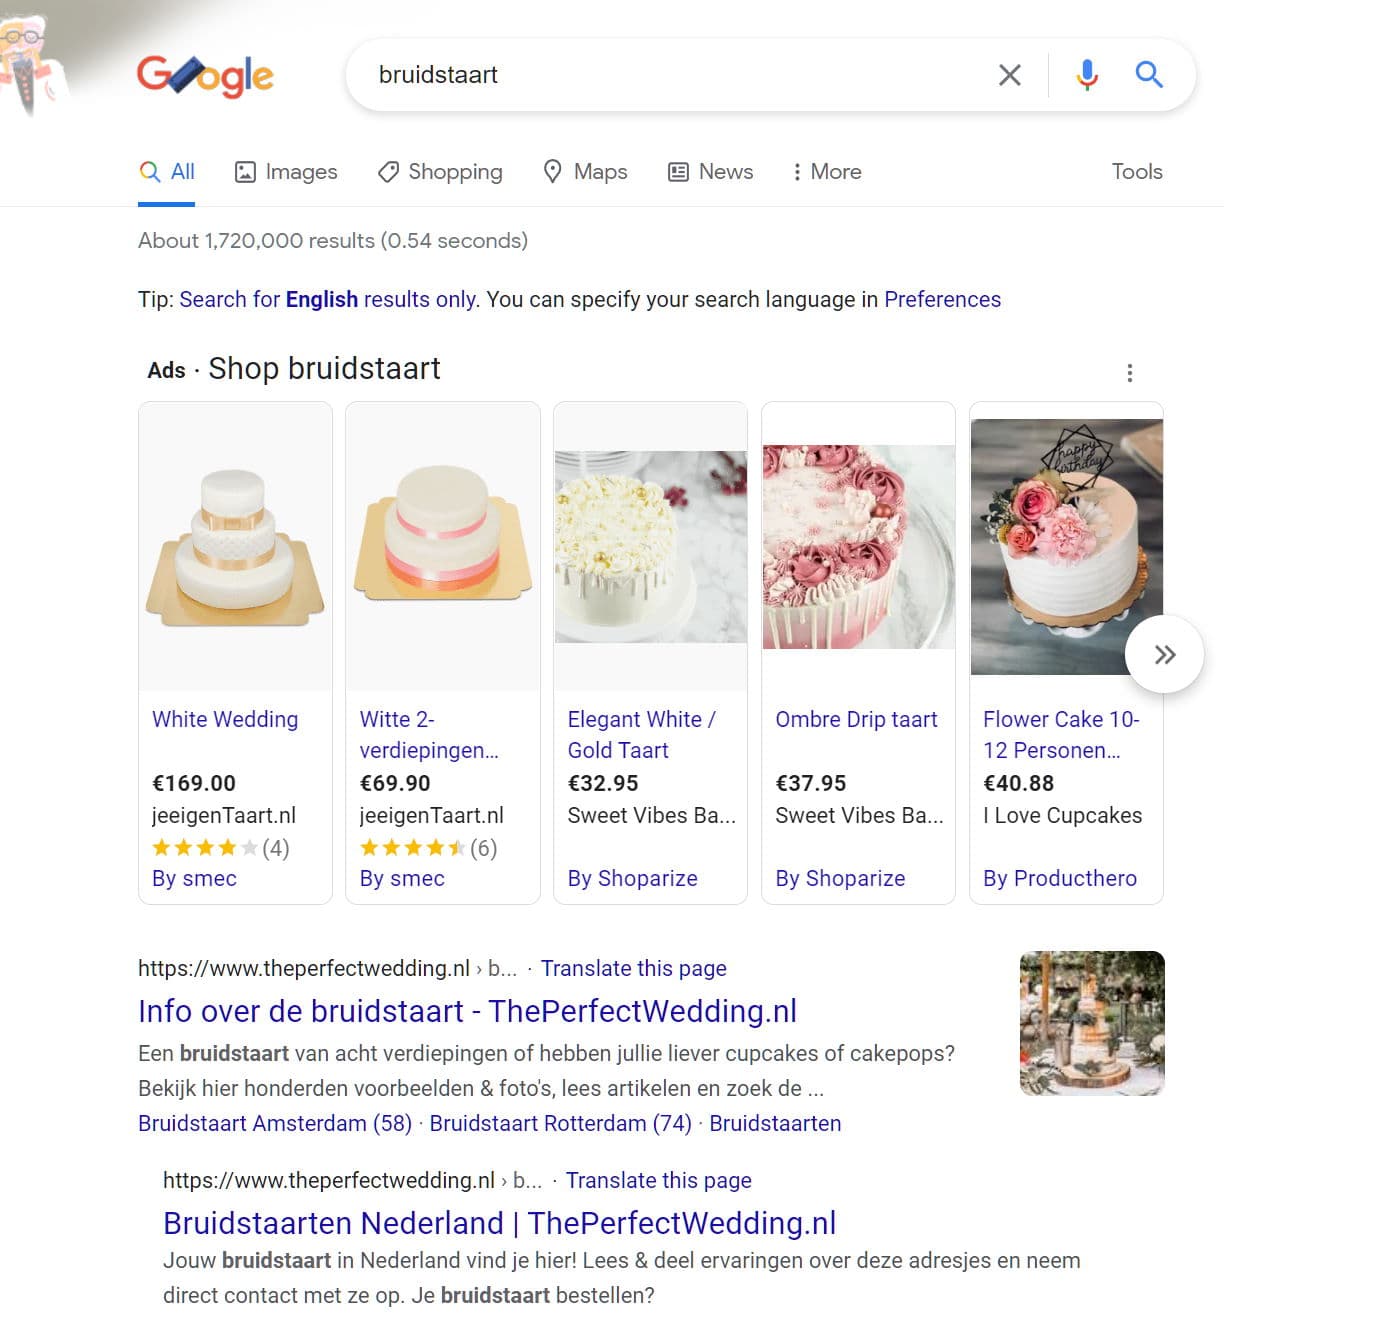 google bruidstaart seo serp